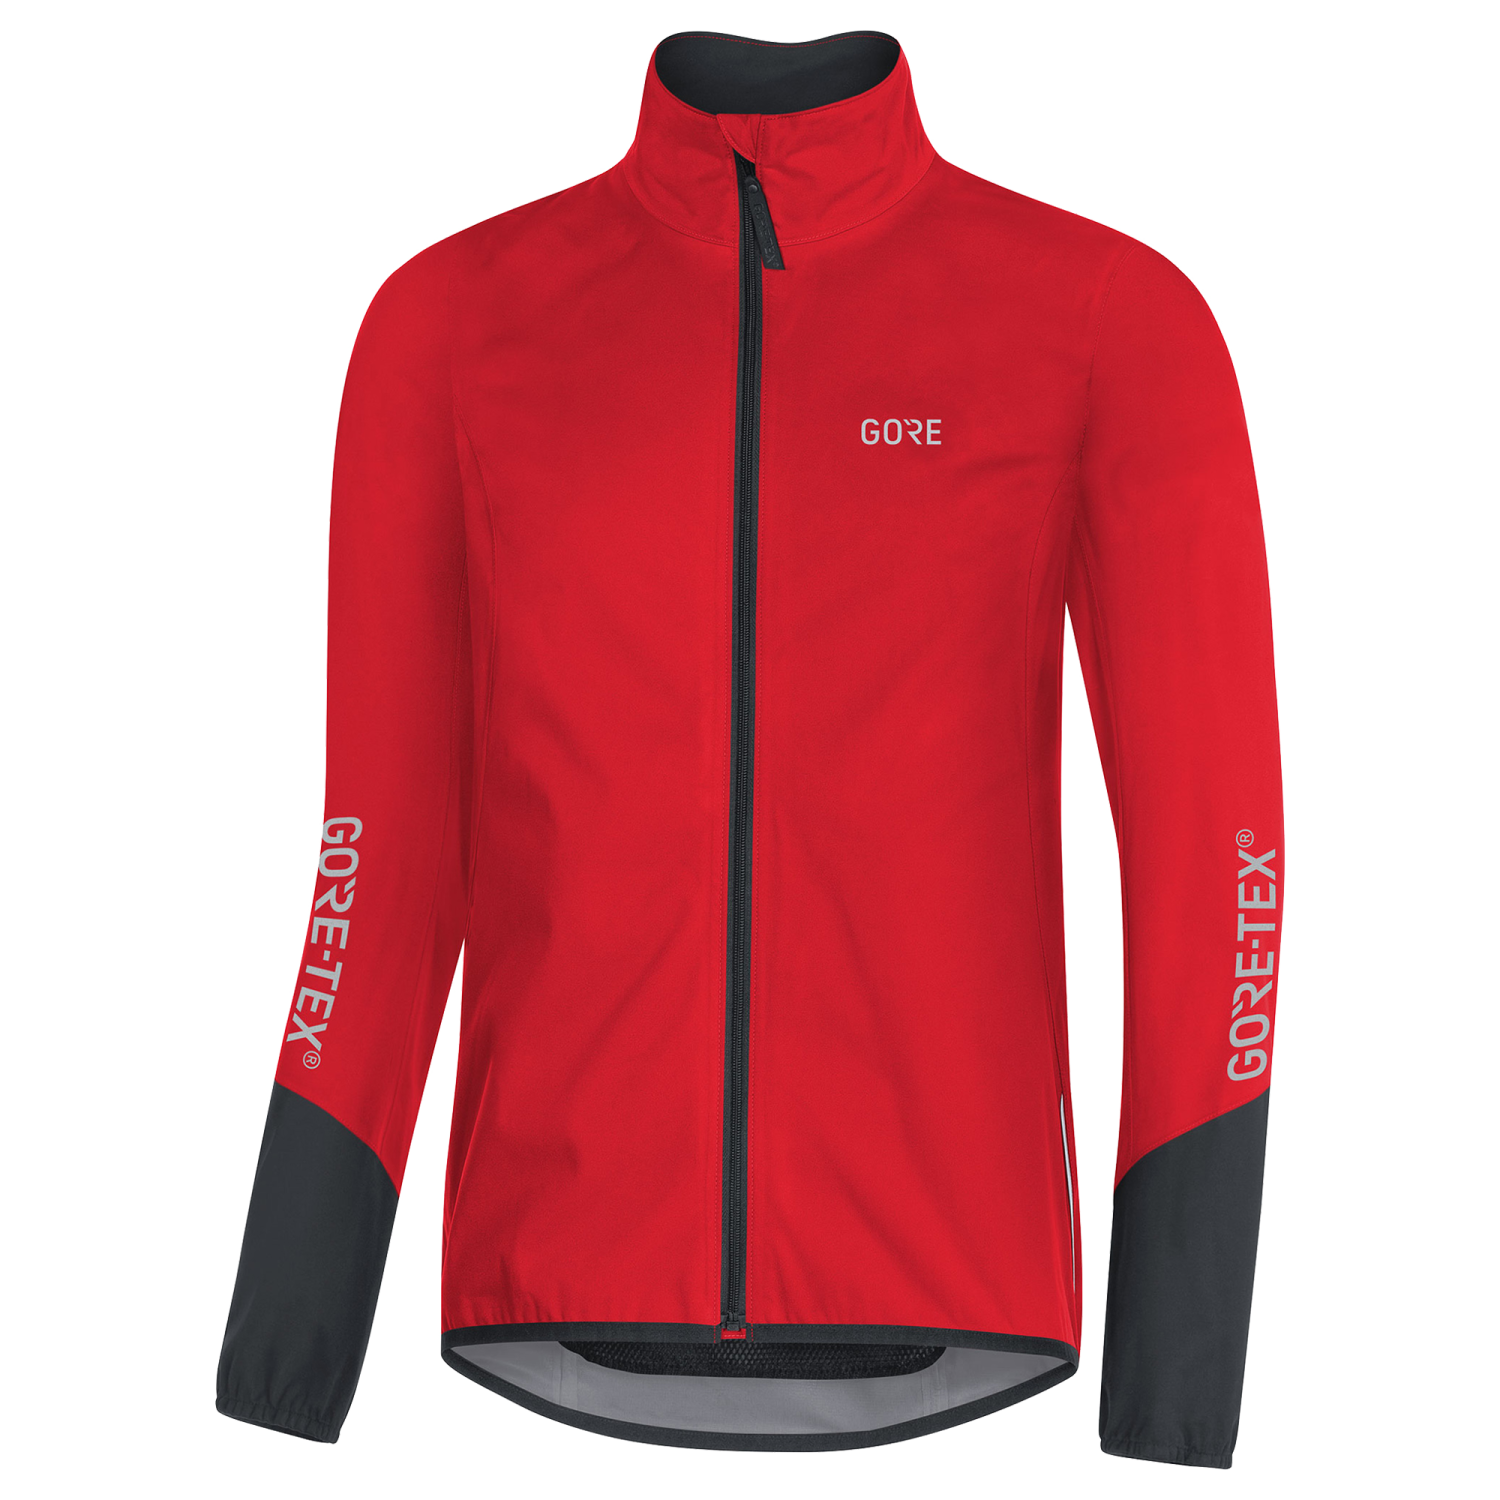 GOREWEAR Men's C5 GORE-TEX Active Cycling Jacket in Red/Black | Medium | Slim fit | Waterproof